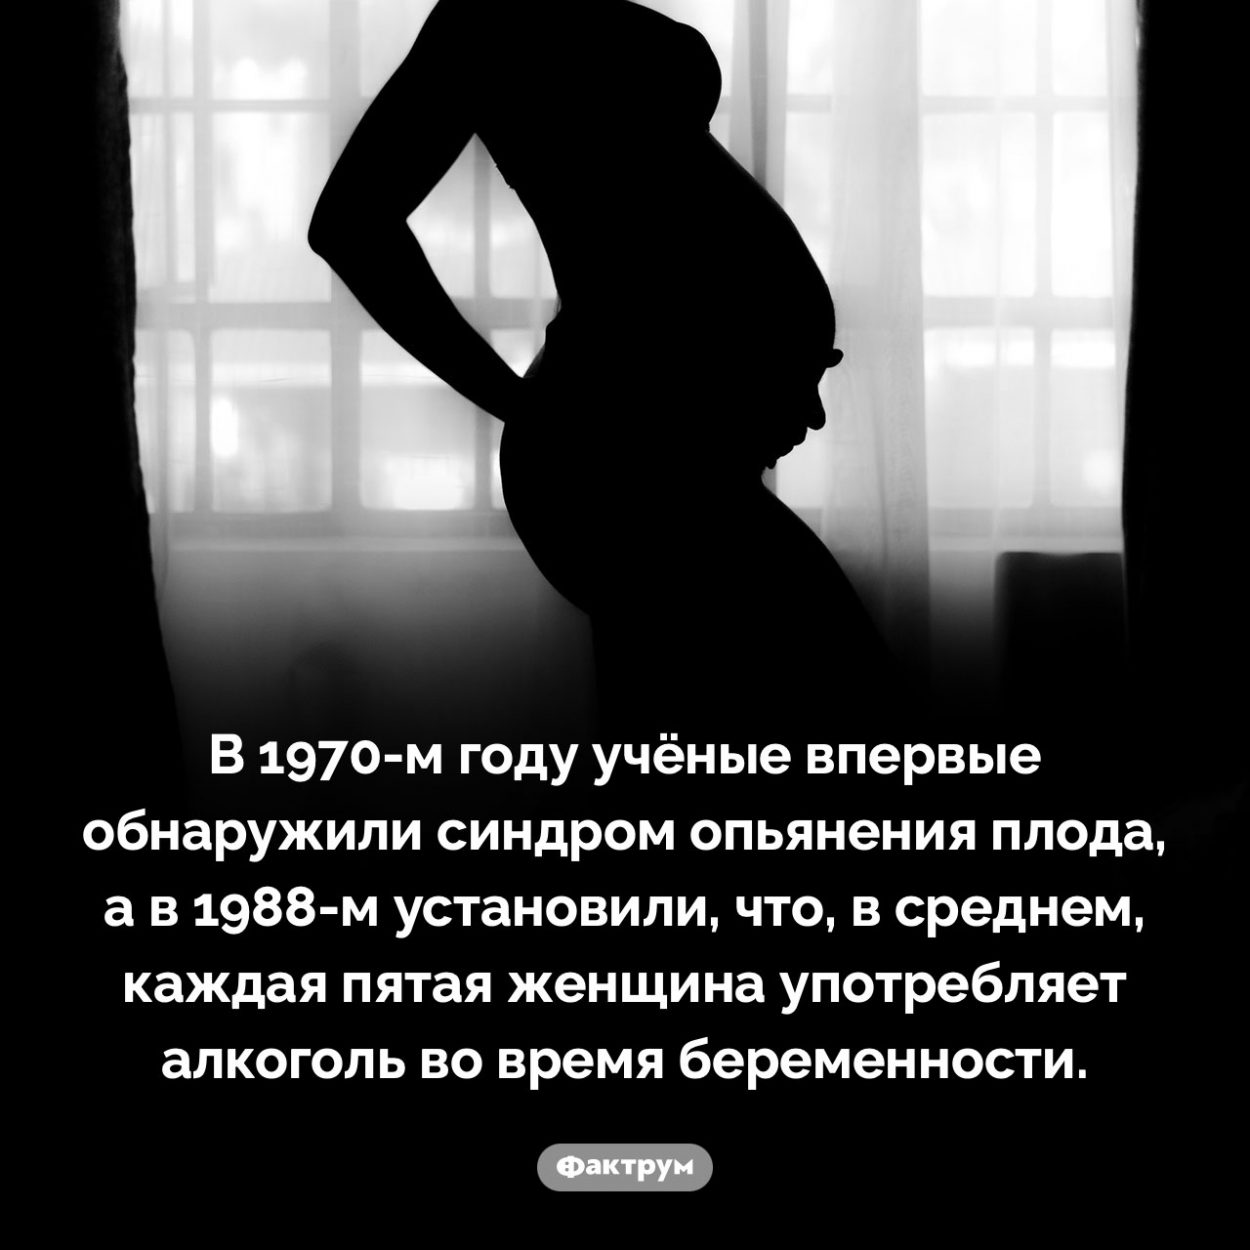 Каждая 5-я женщина пьёт алкогольные напитки во время беременности. В 1970-м году учёные впервые обнаружили синдром опьянения плода, а в 1988-м установили, что, в среднем, каждая пятая женщина употребляет алкоголь во время беременности.